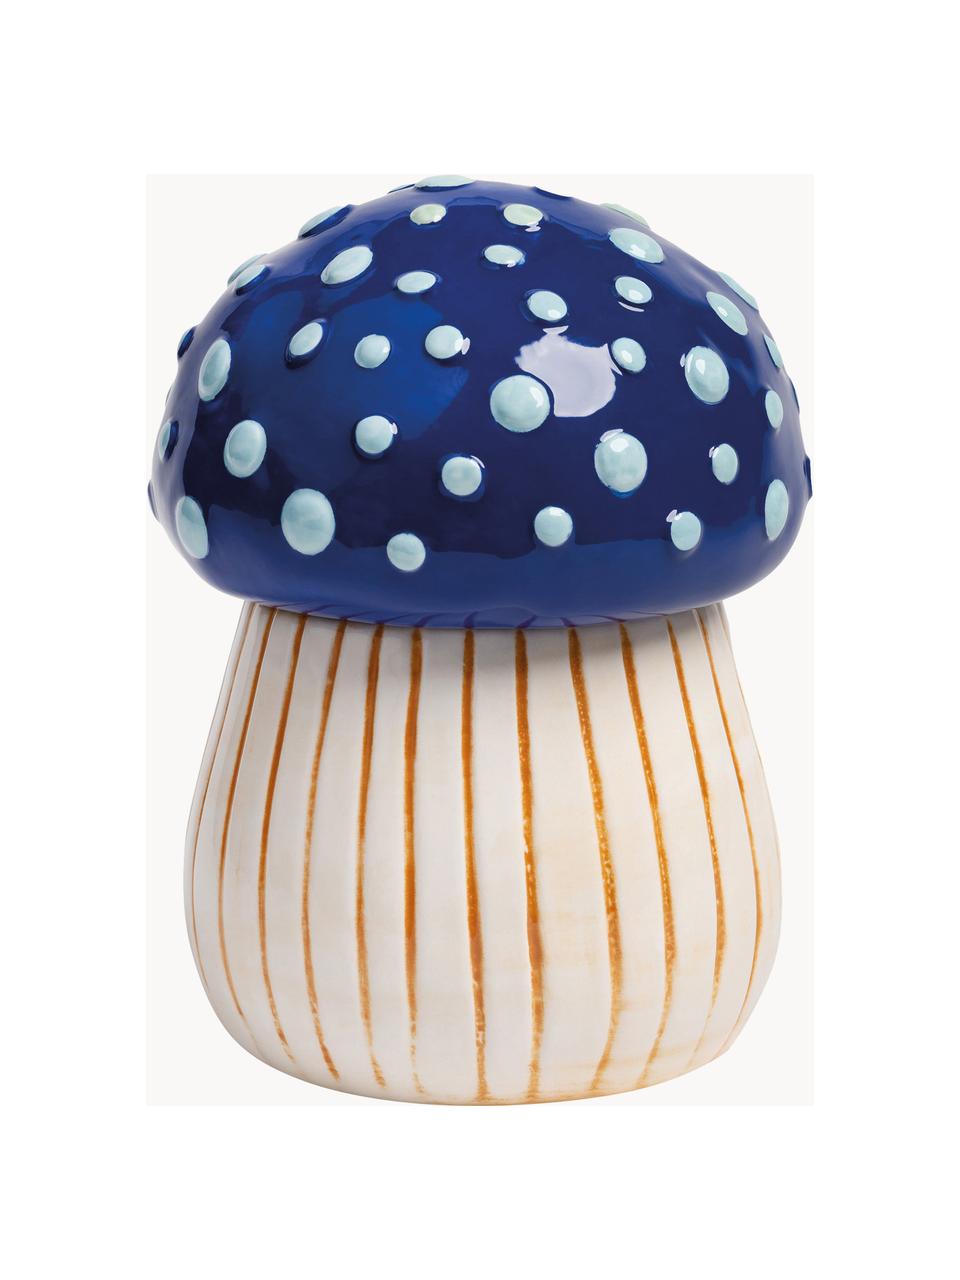 Handbemalte Aufbewahrungsdose Magic Mushroom aus Dolomit, Dolomit, Blautöne, Off White, Hellbraun, Ø 13 x H 17 cm